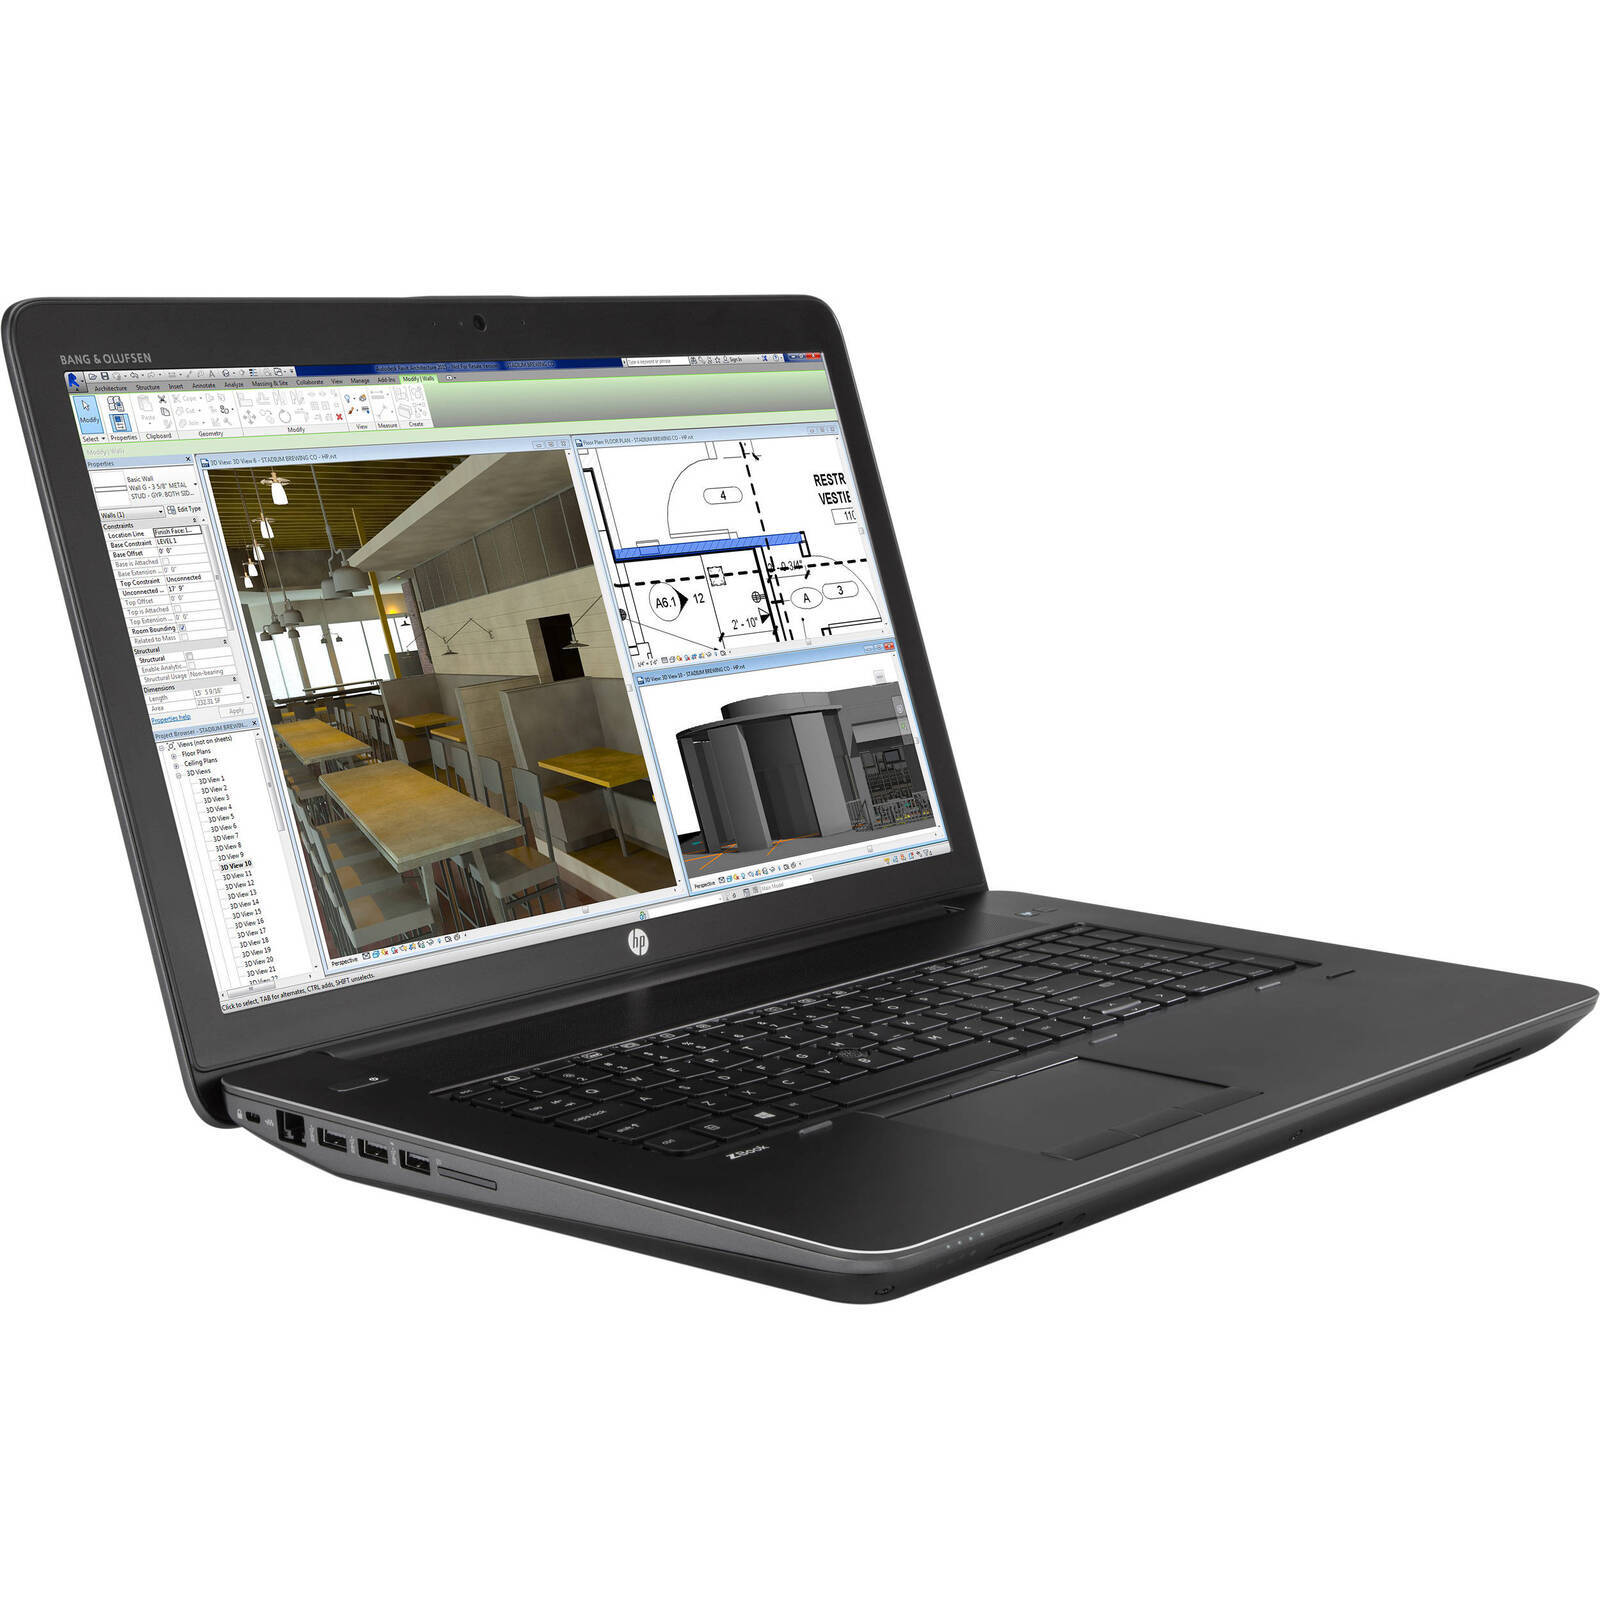 HP Zbook 17 G3 i7 6820HQ 2.70Ghz 16GB RAM 512GB SSD Quadro 17.3" Win 10 - B Grade Image 2